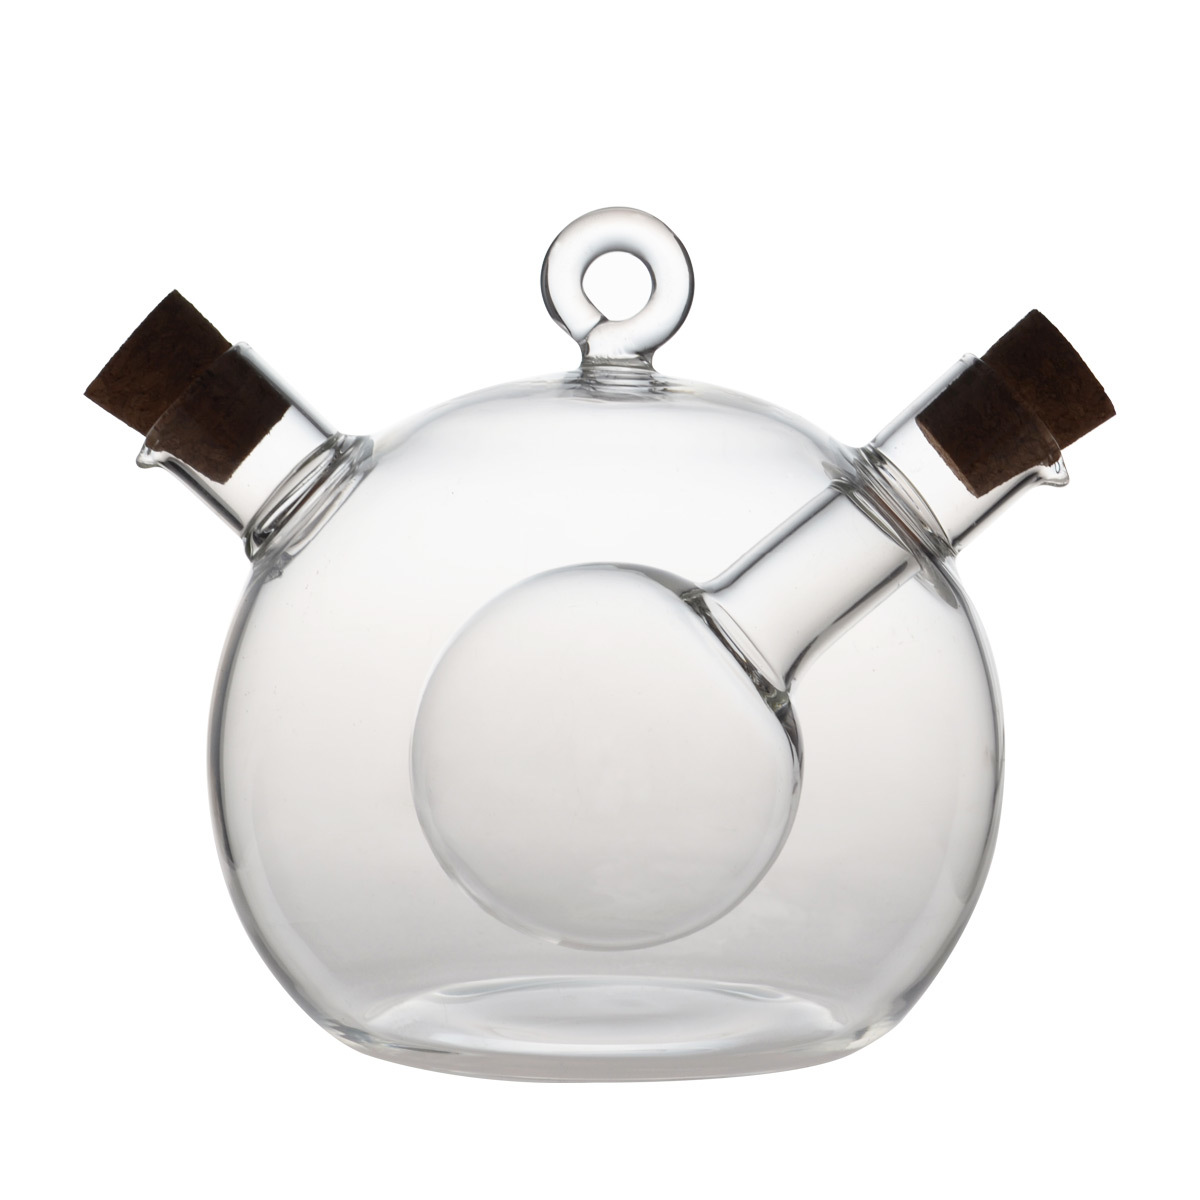 HY1141 50/350ML 2 in 1 Round Ball Design Borosilicate Glass Oil & Vinegar Bottle